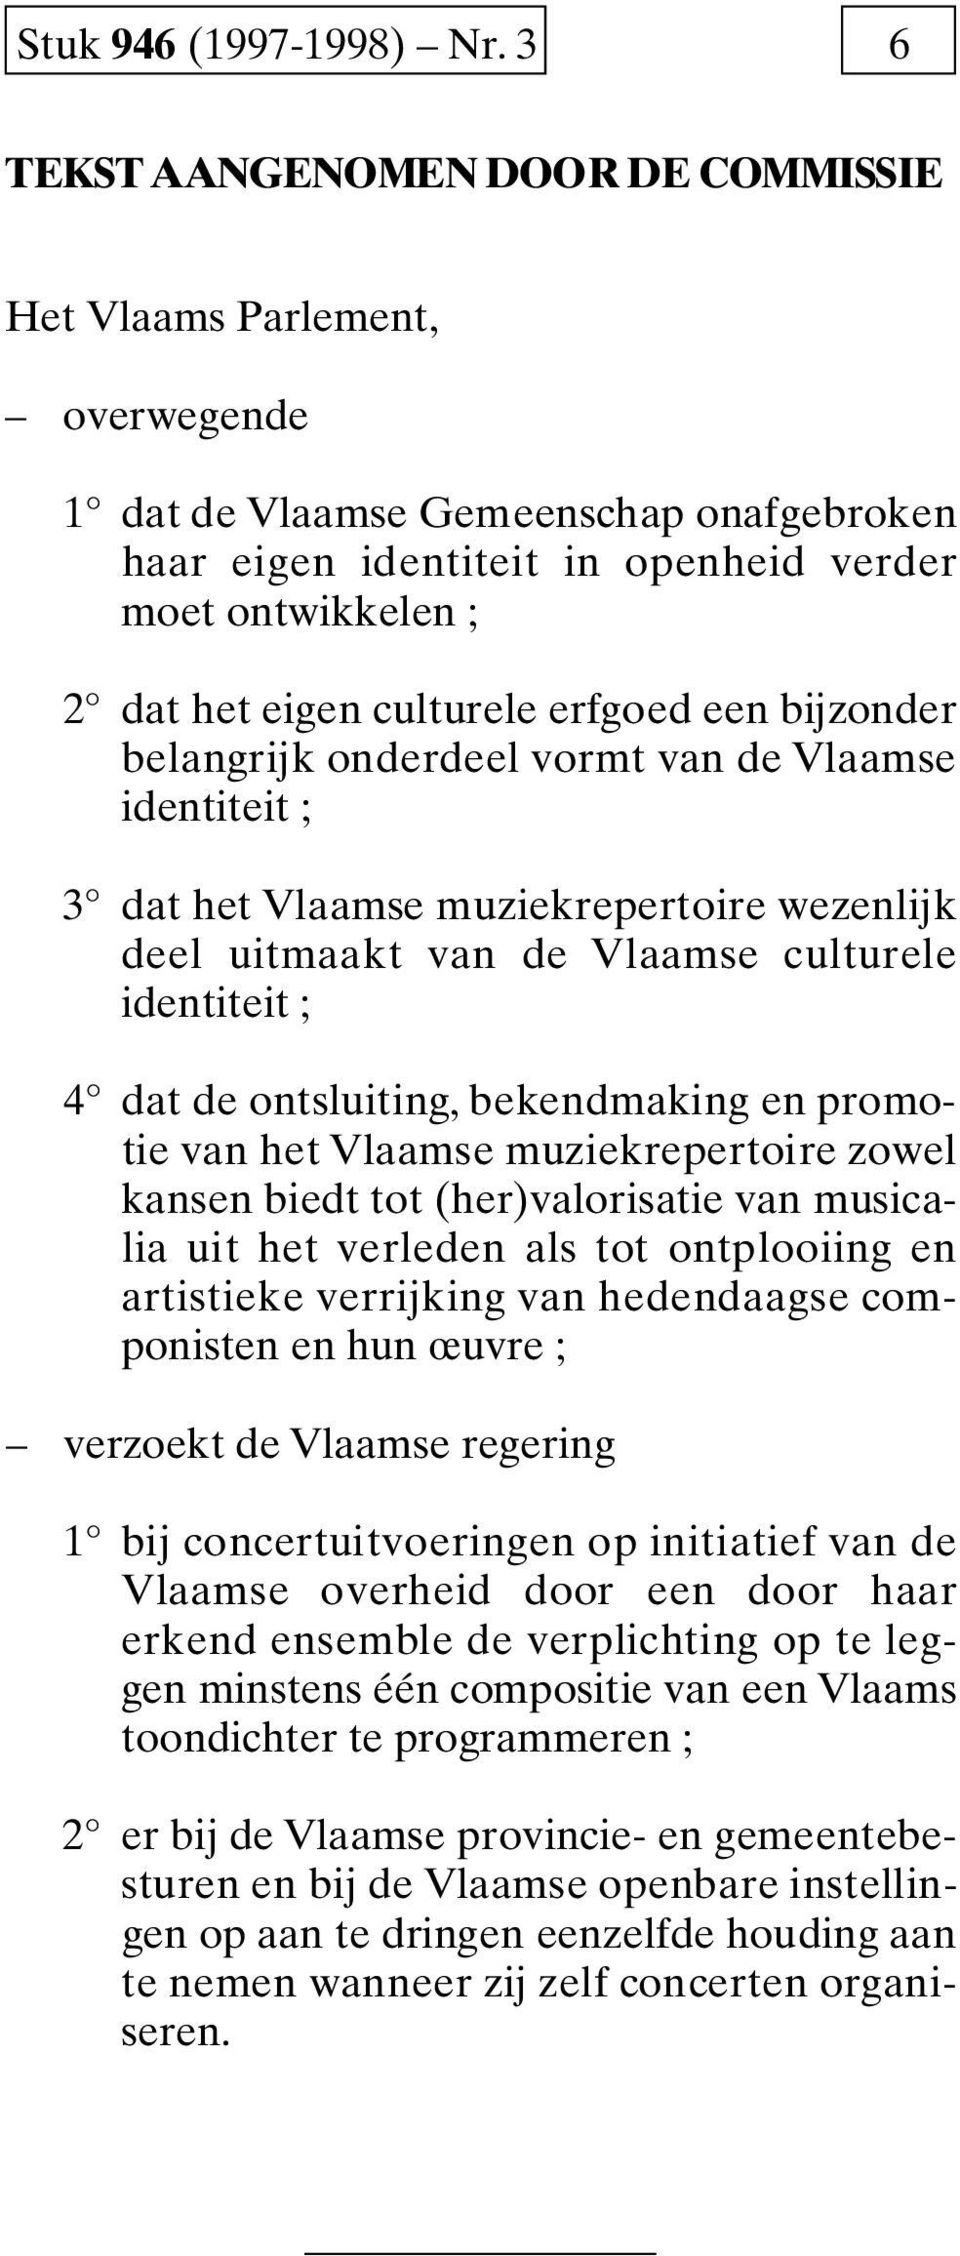 culturele erfgoed een bijzonder belangrijk onderdeel vormt van de V l a a m s e identiteit ; 3 dat het Vlaamse muziekrepertoire wezenlijk deel uitmaakt van de Vlaamse culturele identiteit ; 4 dat de